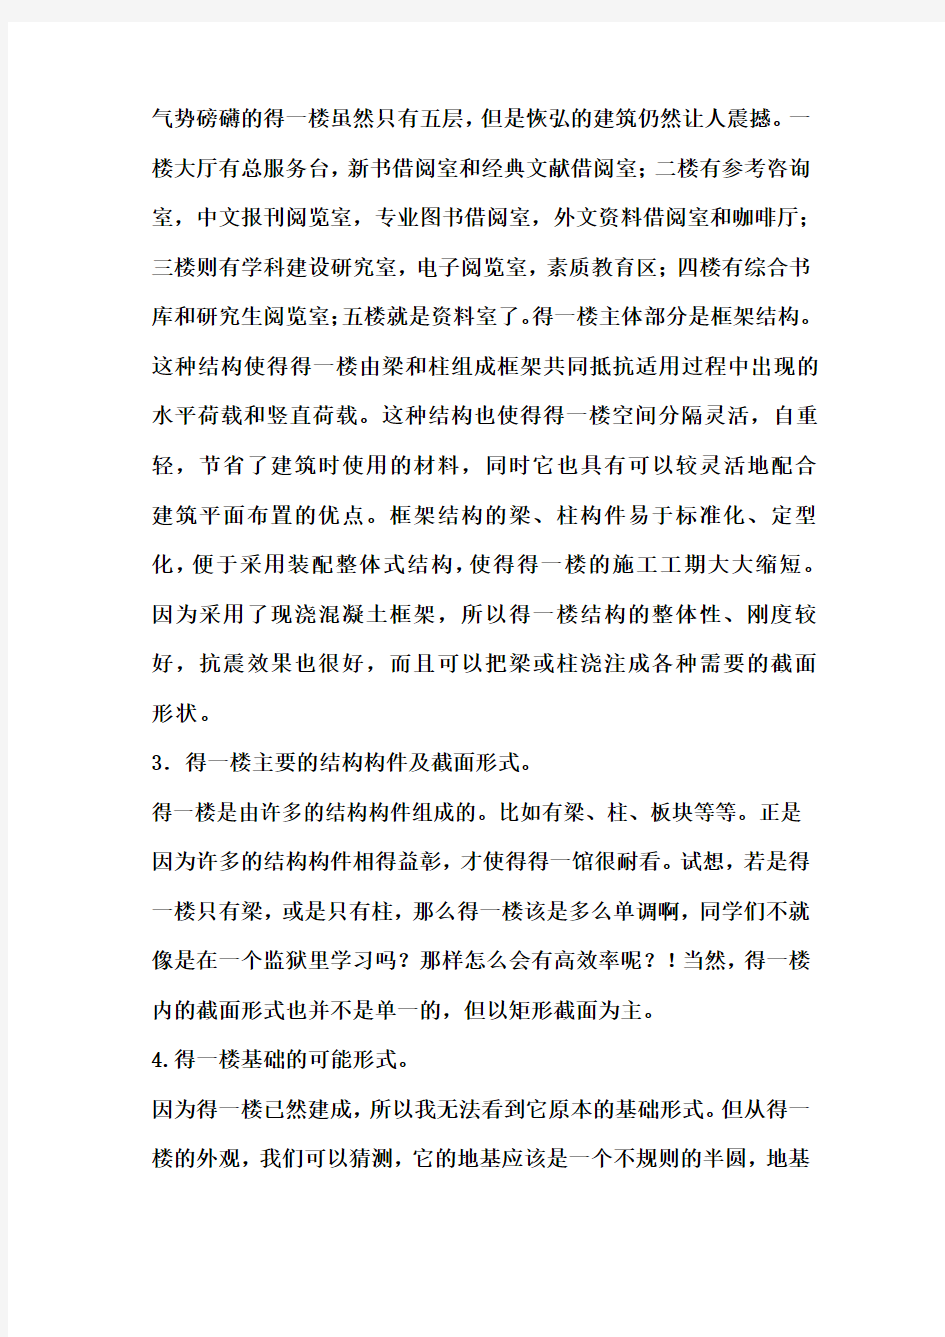 南京审计学院浦口校区图书馆项目调查报告书